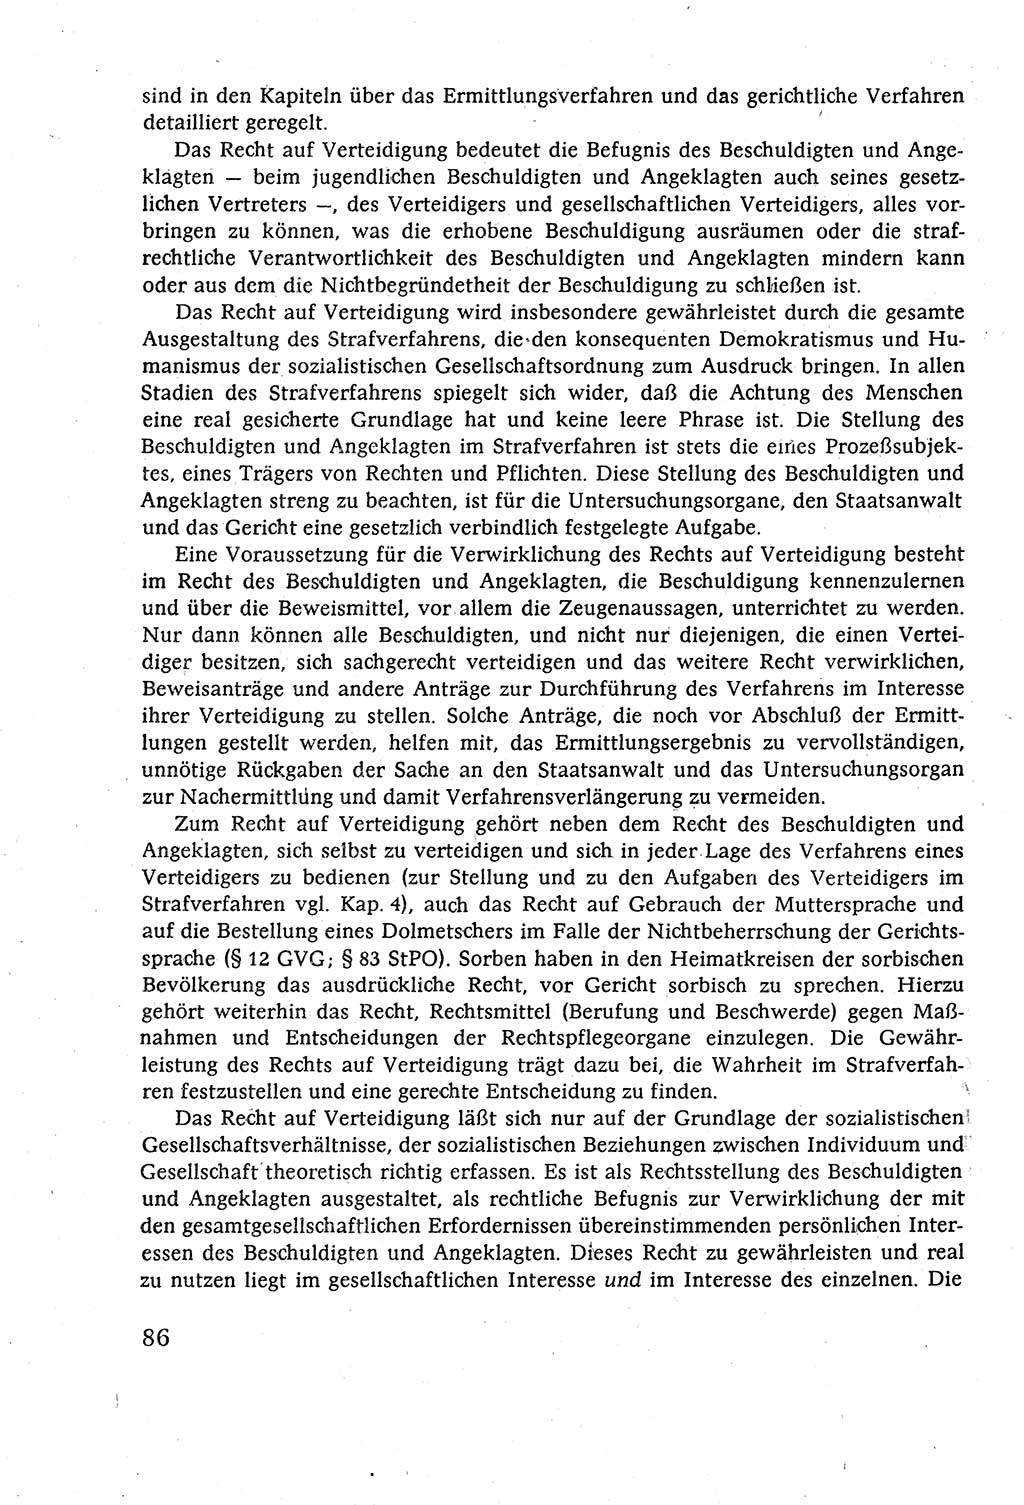 Strafverfahrensrecht [Deutsche Demokratische Republik (DDR)], Lehrbuch 1977, Seite 86 (Strafverf.-R. DDR Lb. 1977, S. 86)